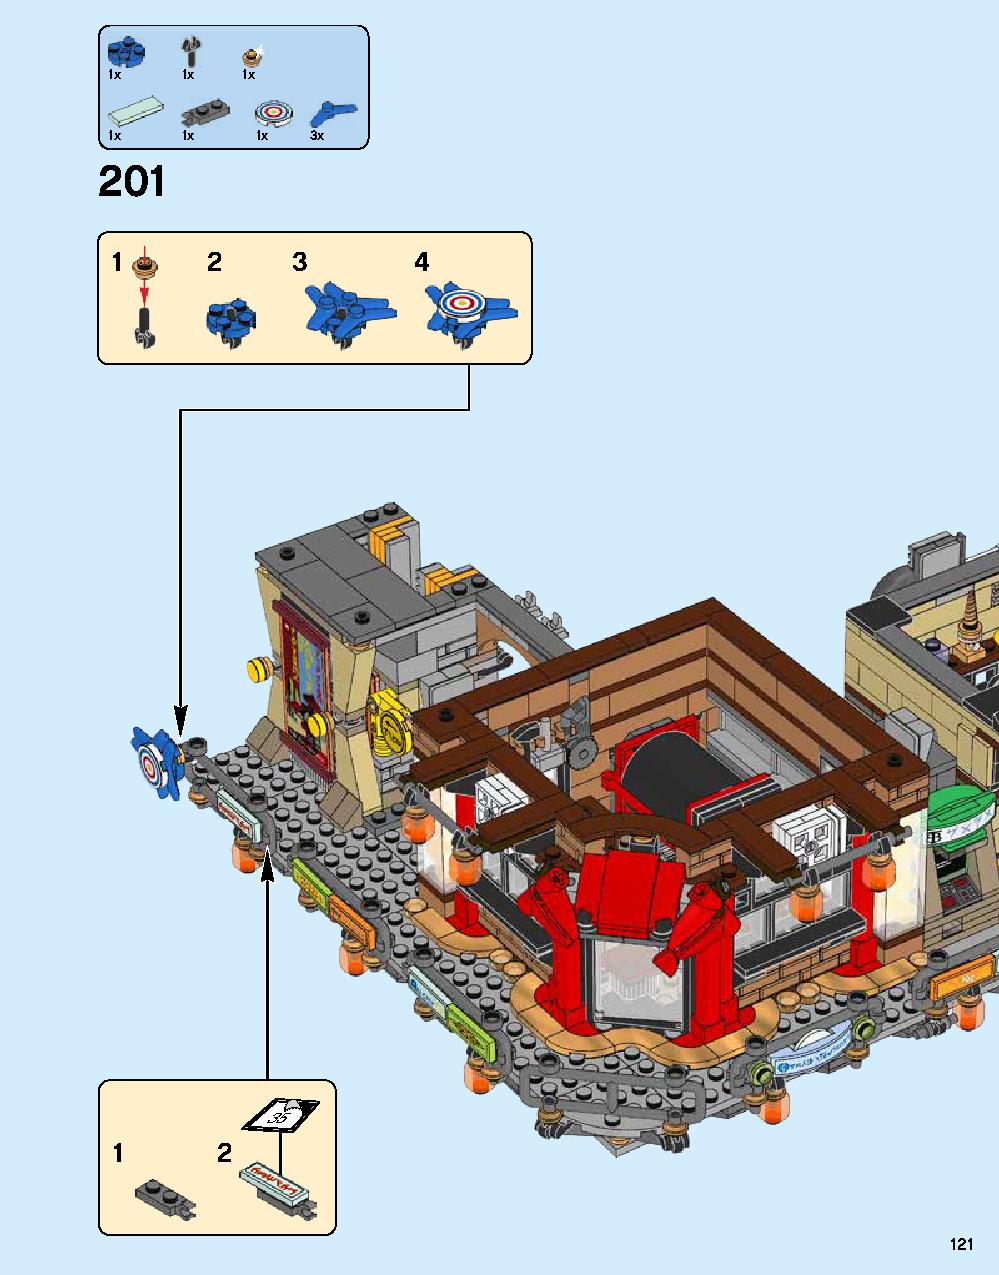 ニンジャゴー シティ 70620 レゴの商品情報 レゴの説明書・組立方法 121 page